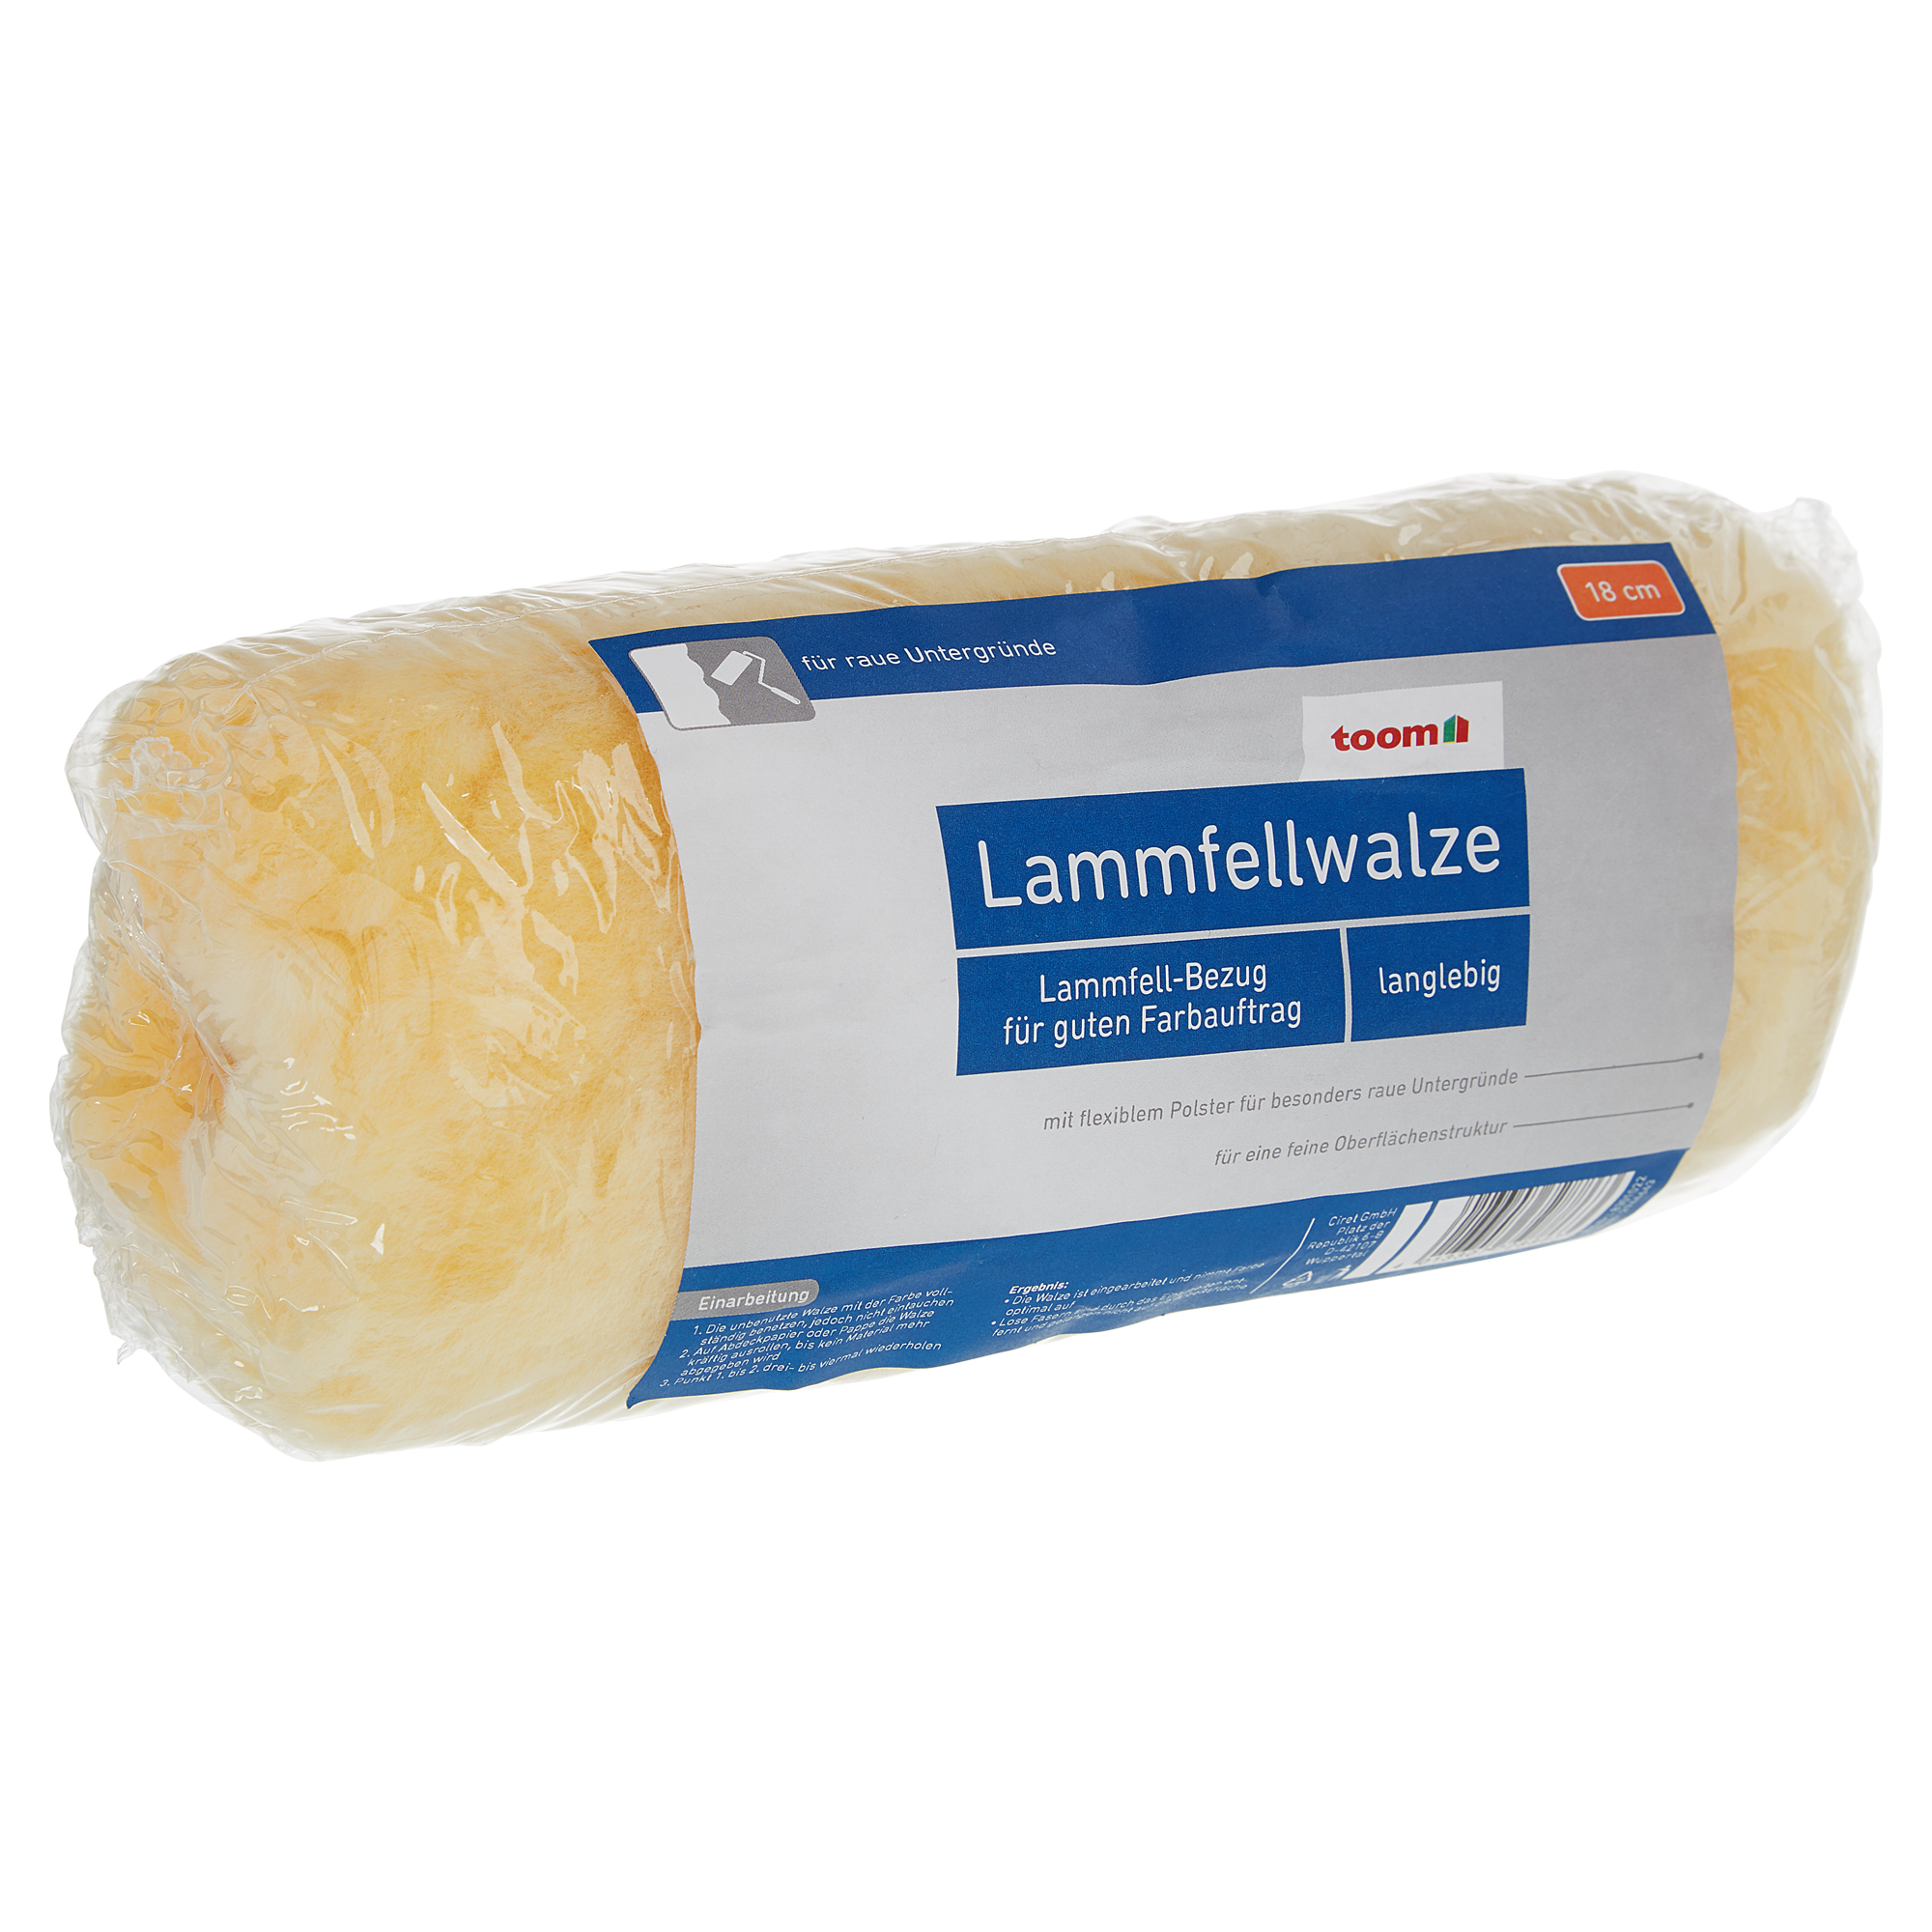 Lammfellwalze rau 18 cm + product picture